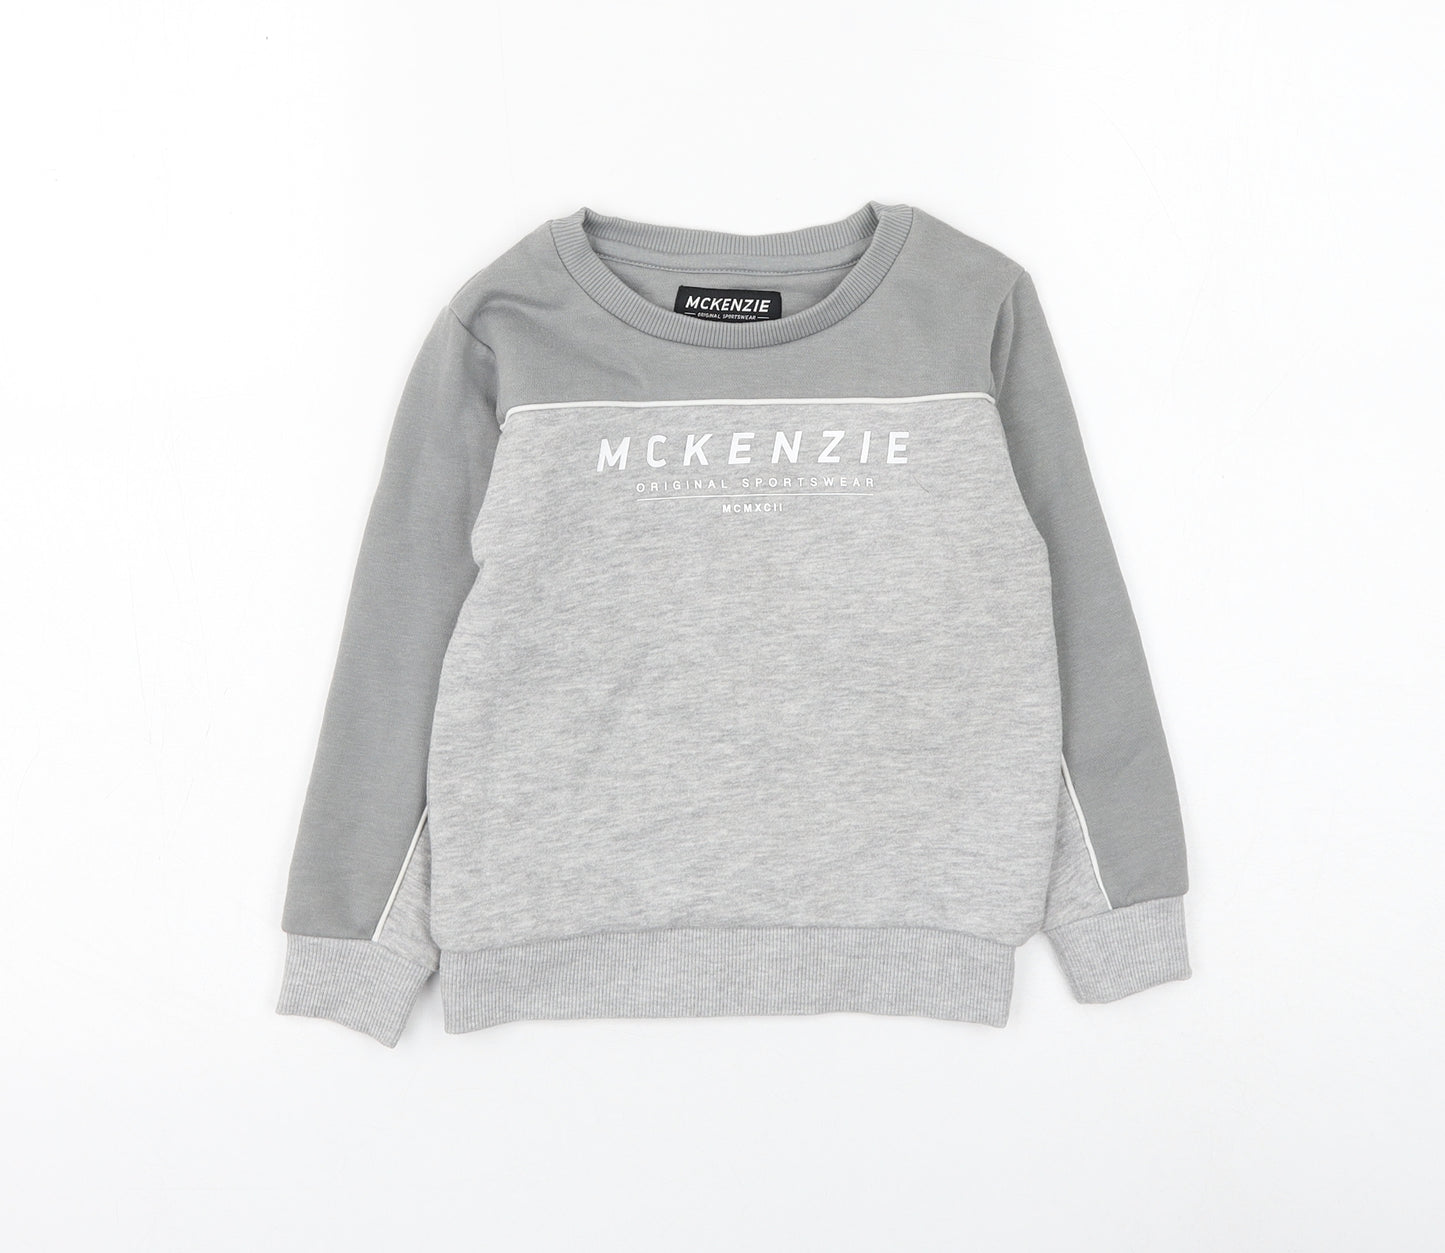 McKenzie Boys Grey Cotton Pullover Sweatshirt Size 4-5 Years Pullover